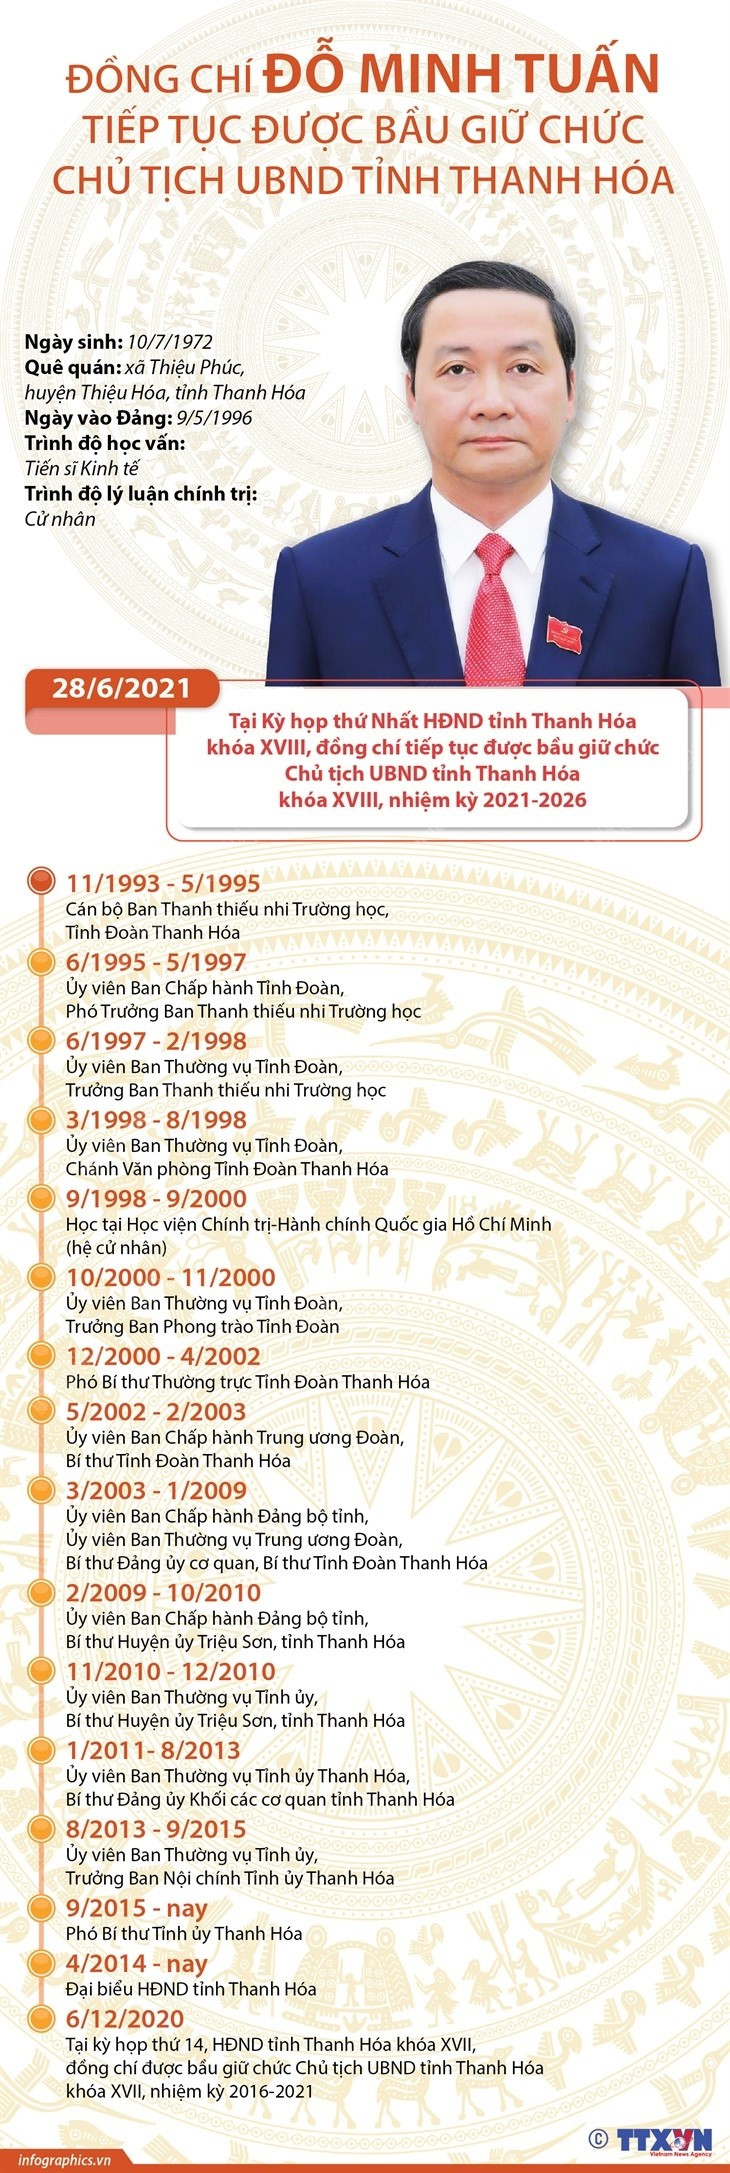 [Infographics] Ong Do Minh Tuan giu chuc Chu tich UBND tinh Thanh Hoa hinh anh 1